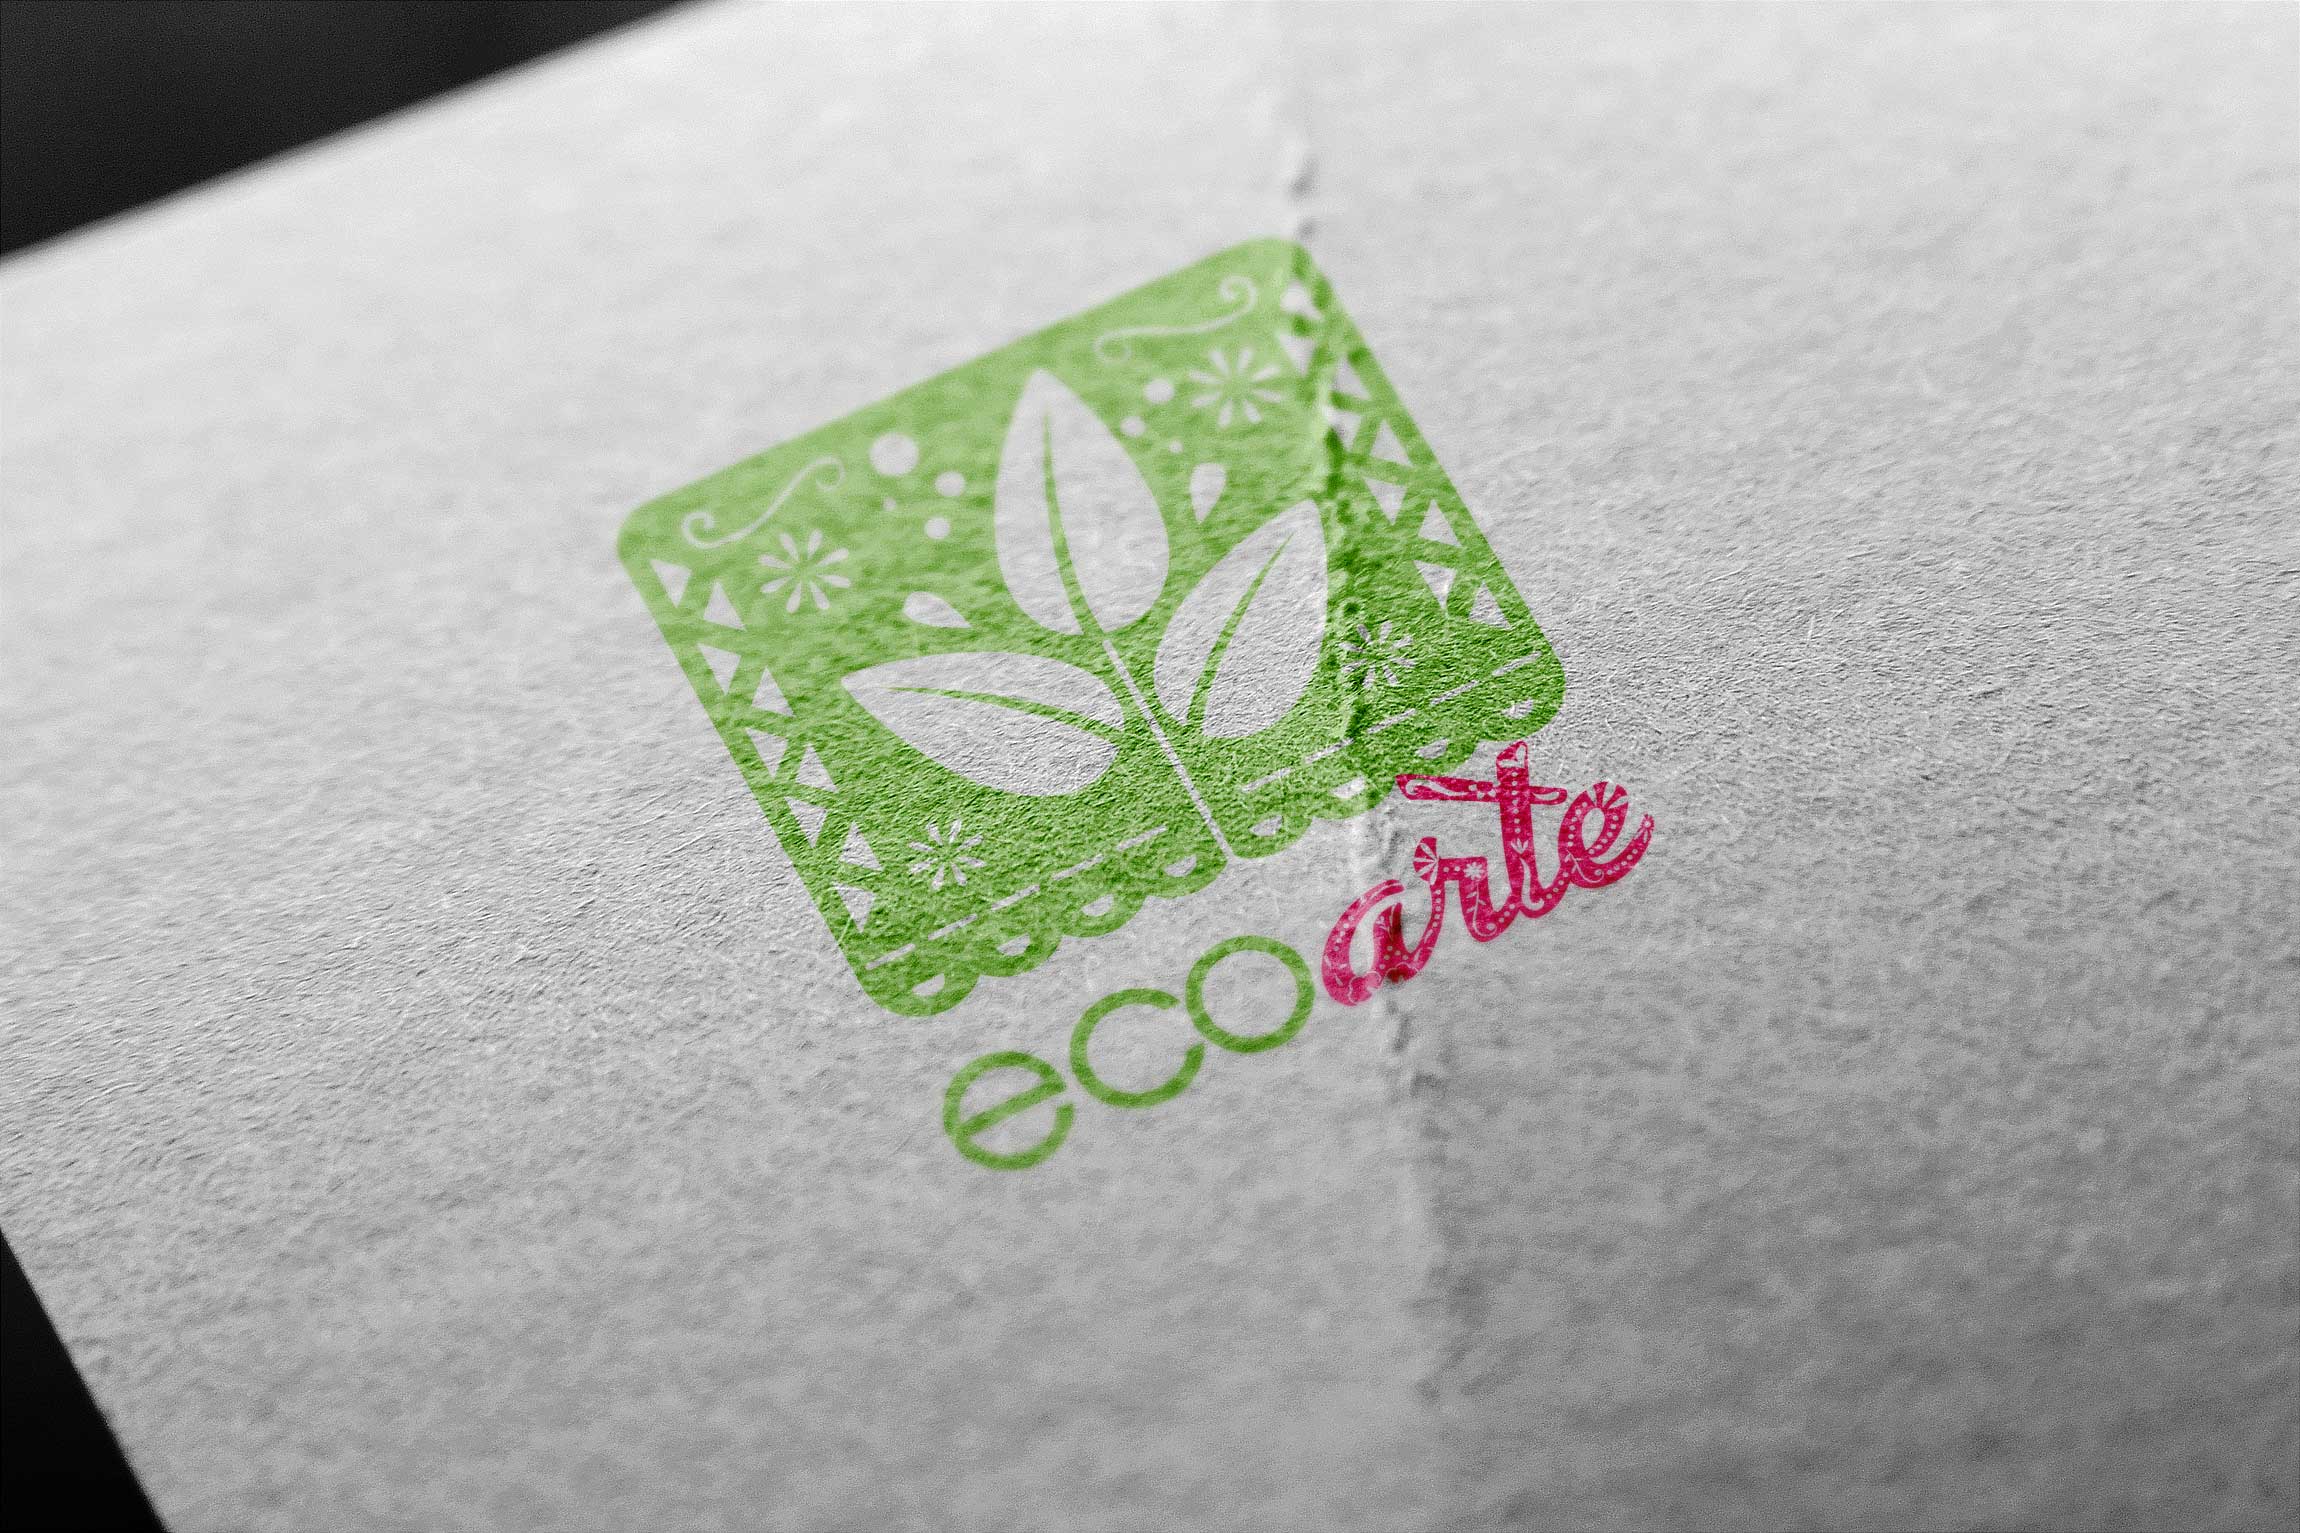 agencia publicidad diseño gráfico logotipo imagotipo Ecoarte papel picado